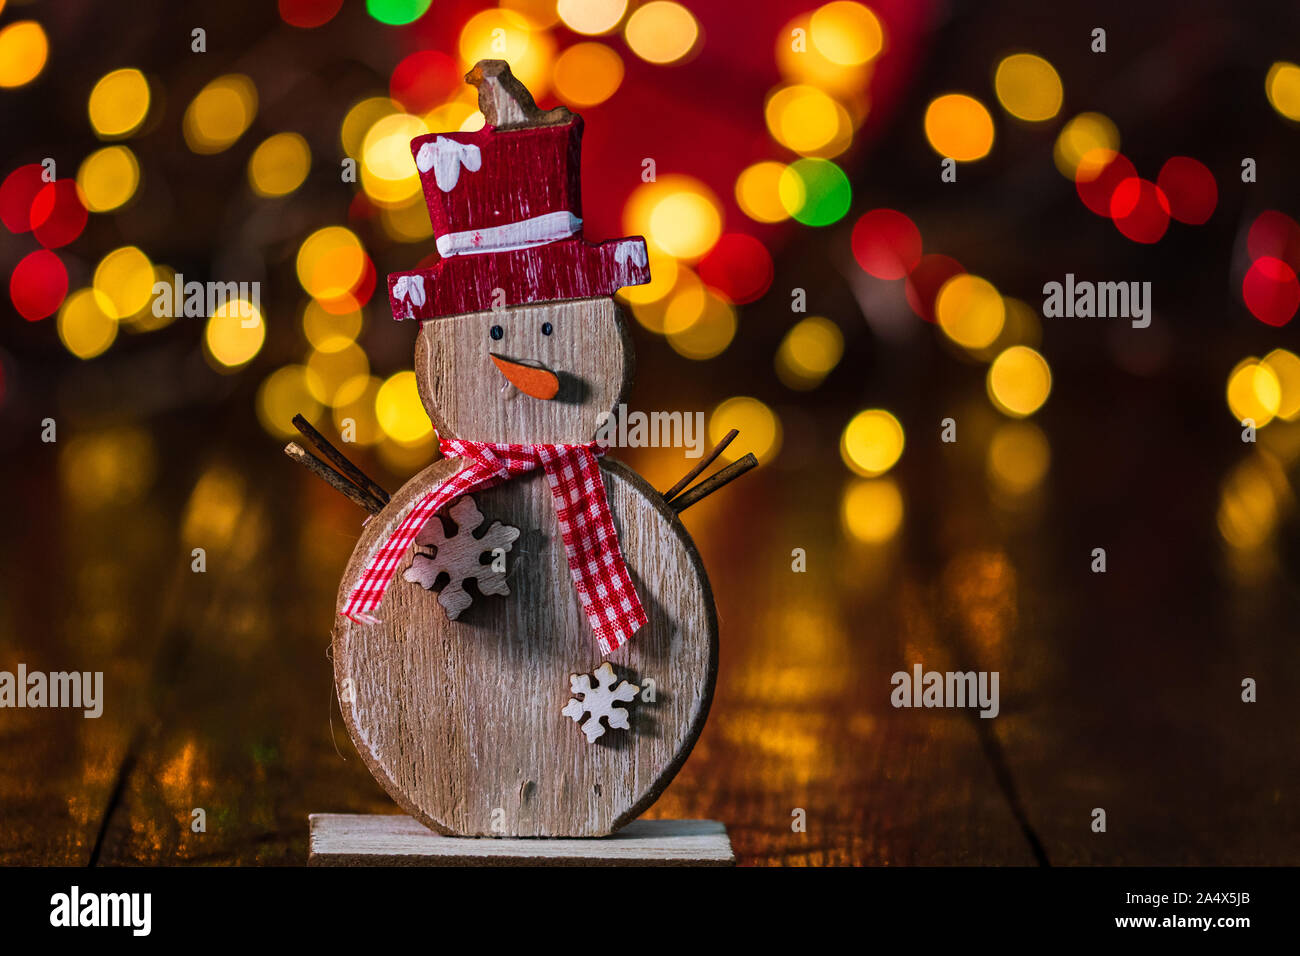 Le decorazioni di Natale contro sfondo sfocato e fuori fuoco luci. Legno decorativo pupazzo di neve e glittery palle di Natale Foto Stock